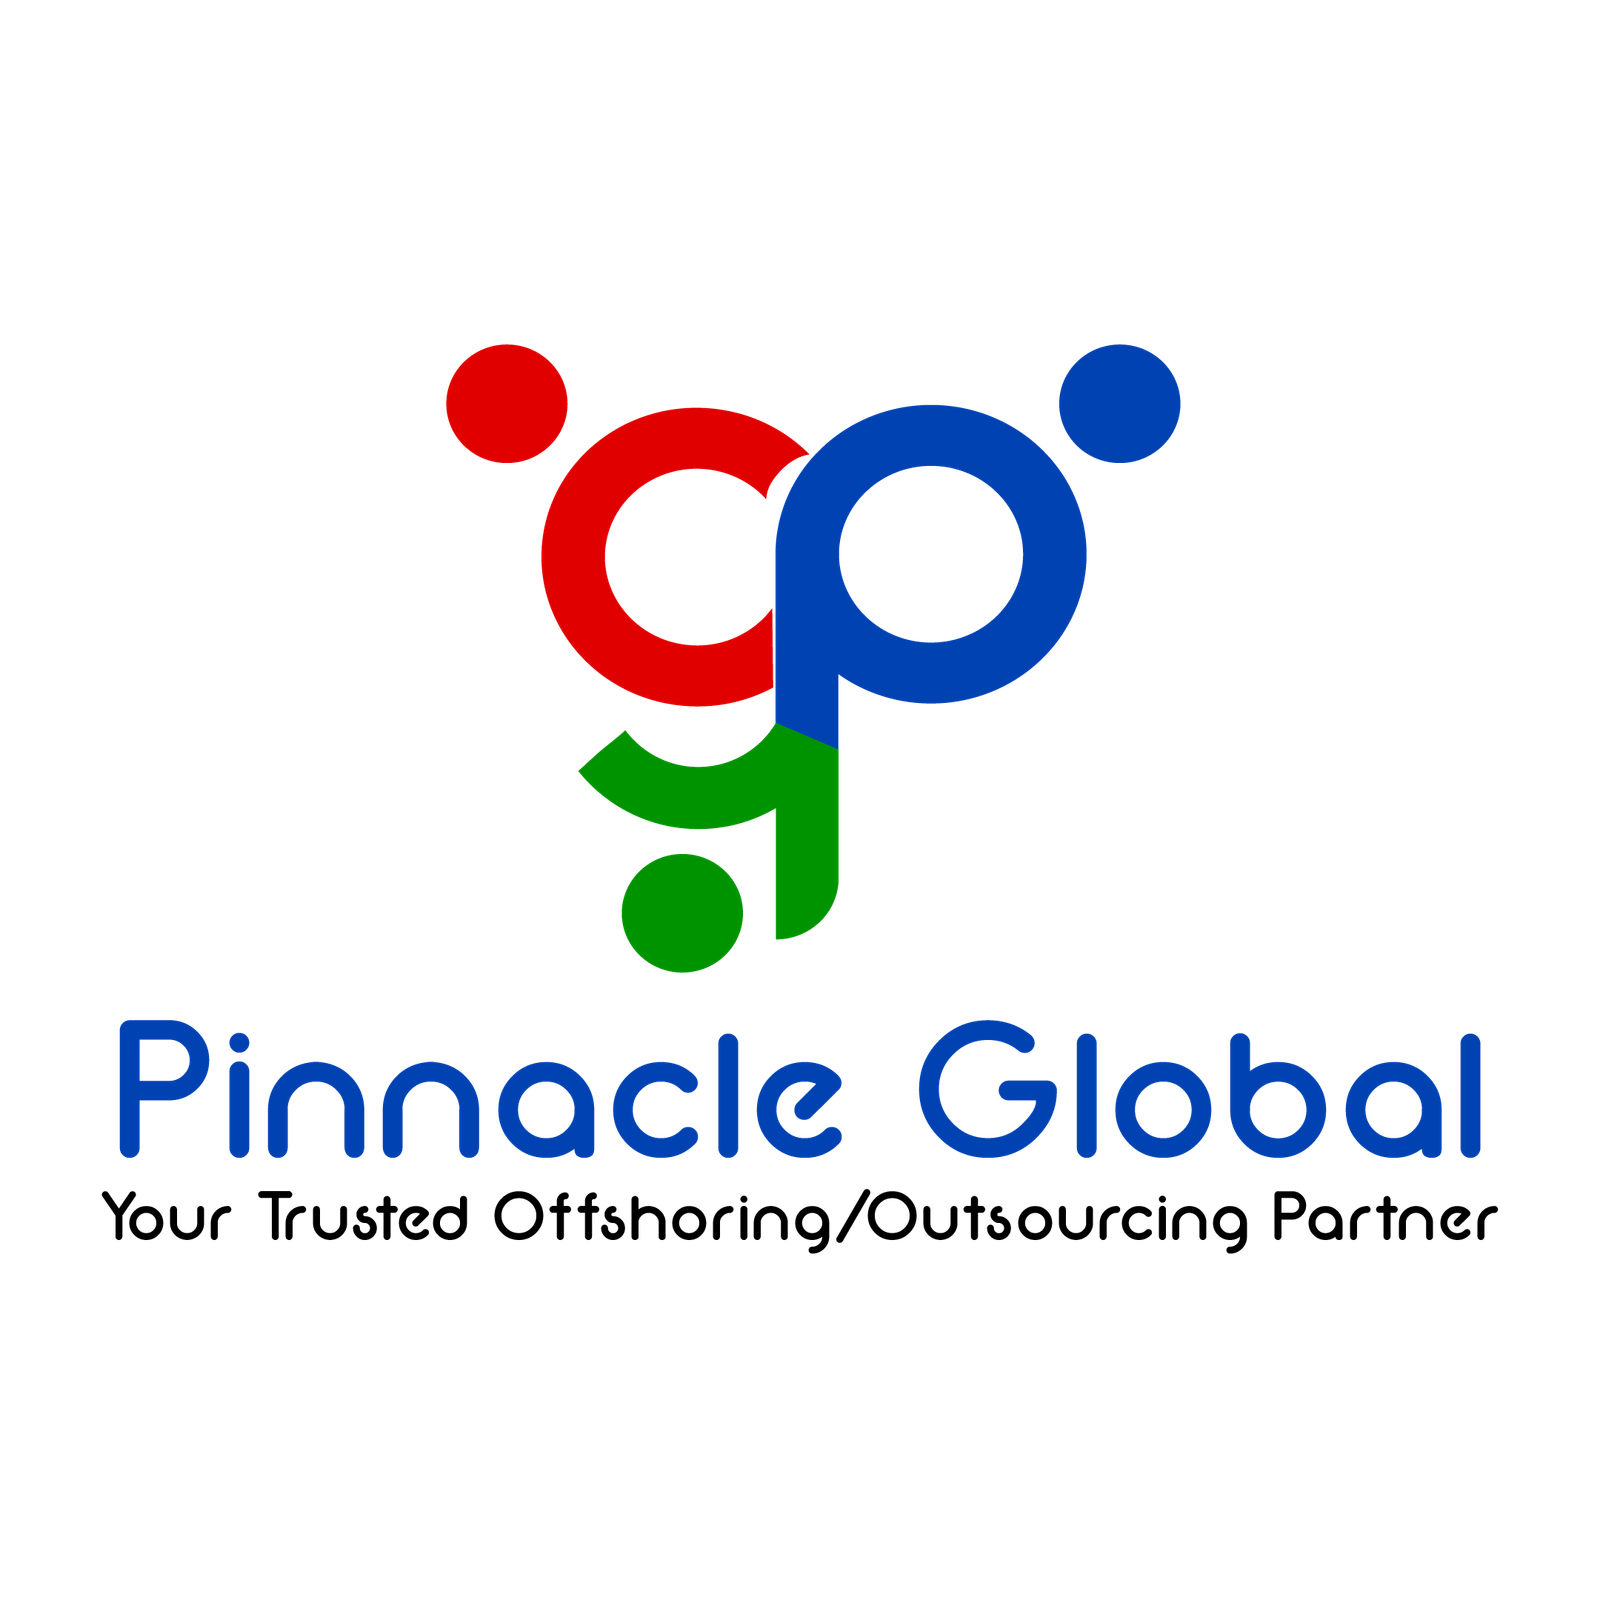 Pinnacle Group Global